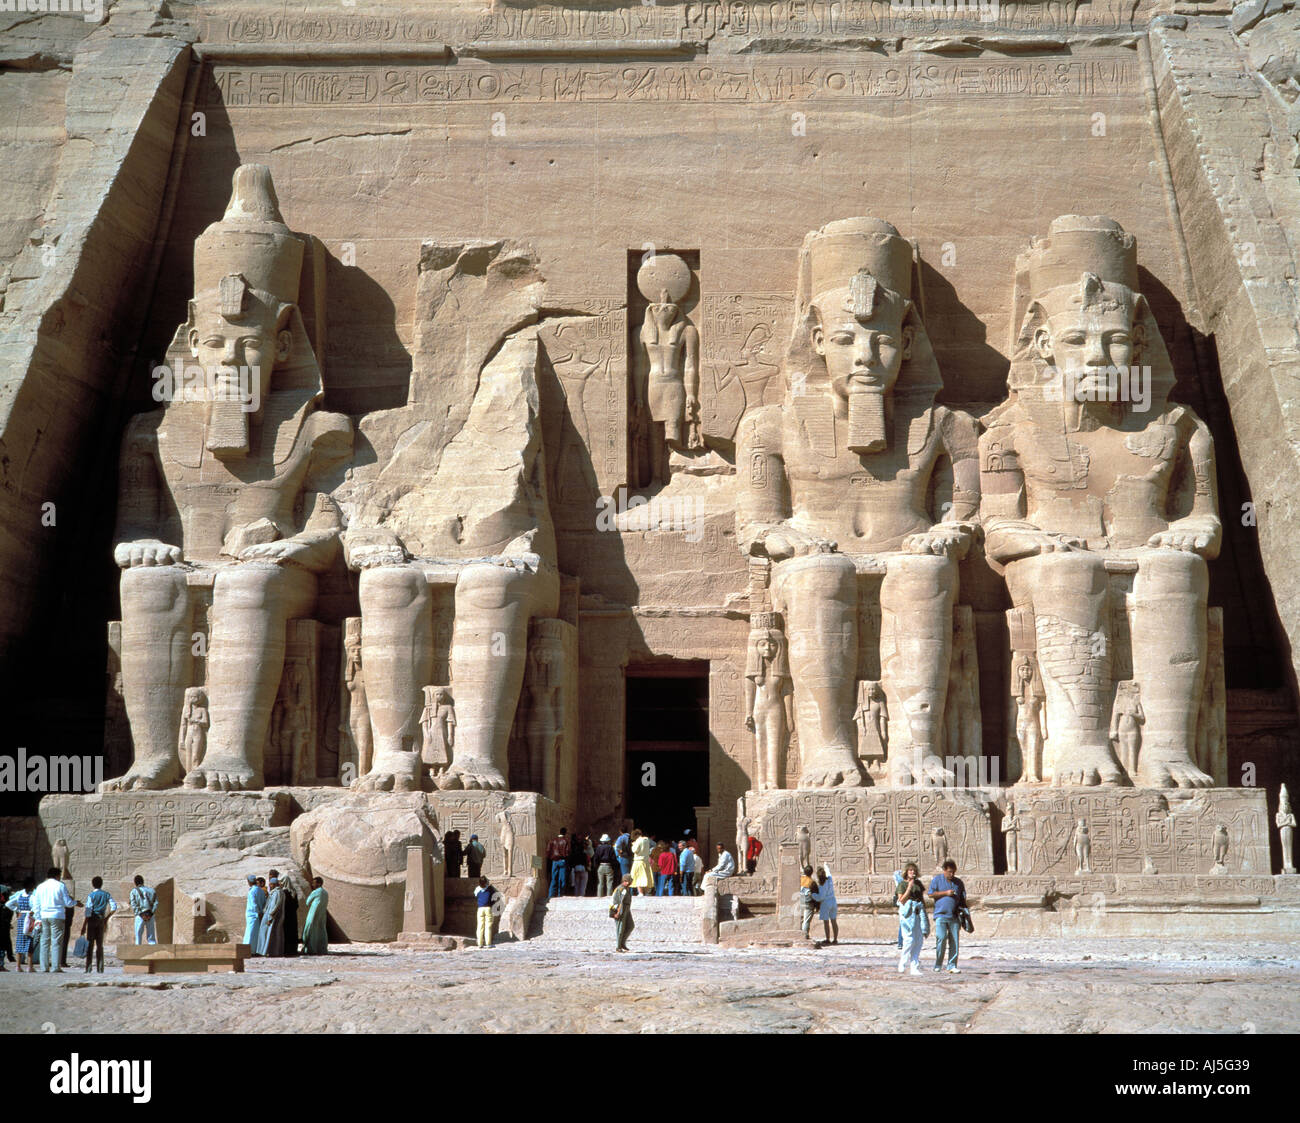 Ramses-Statuen in Abu Simbel, Aegypten Stock Photo